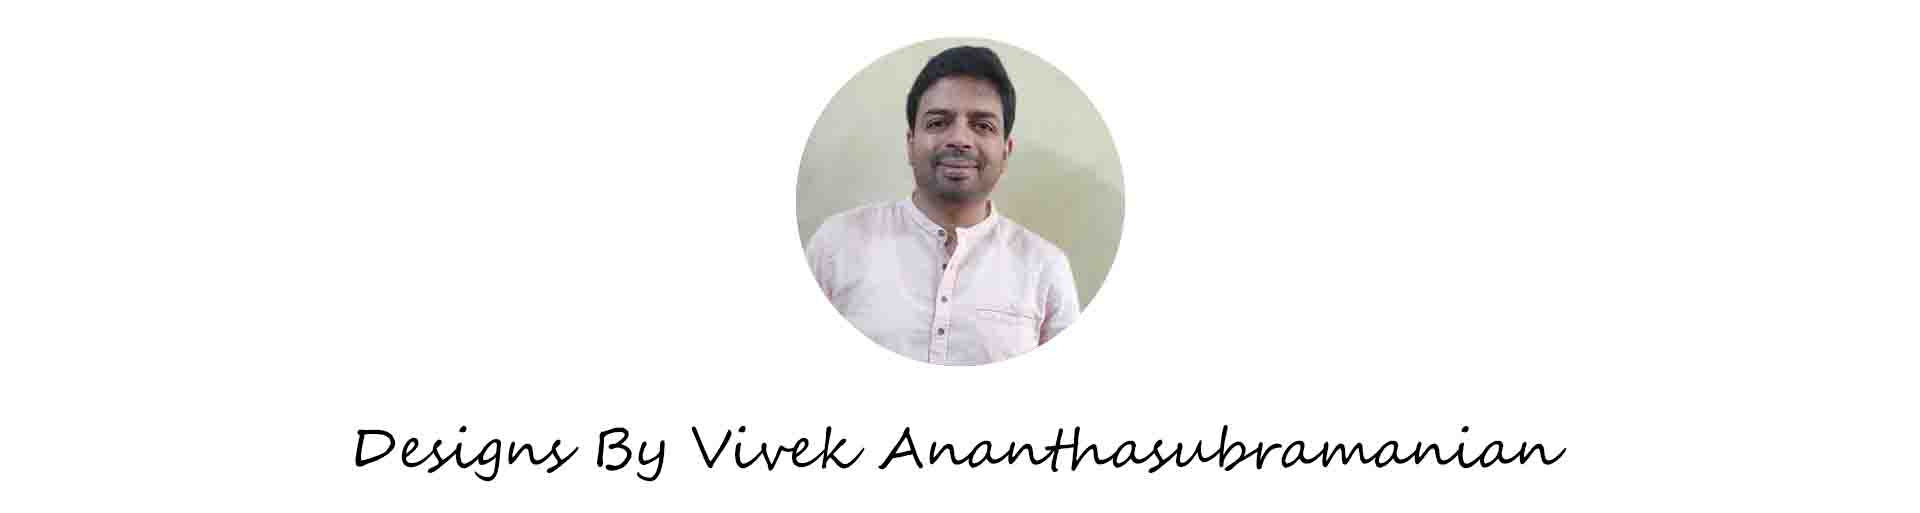 Vivek Ananthasubramanian